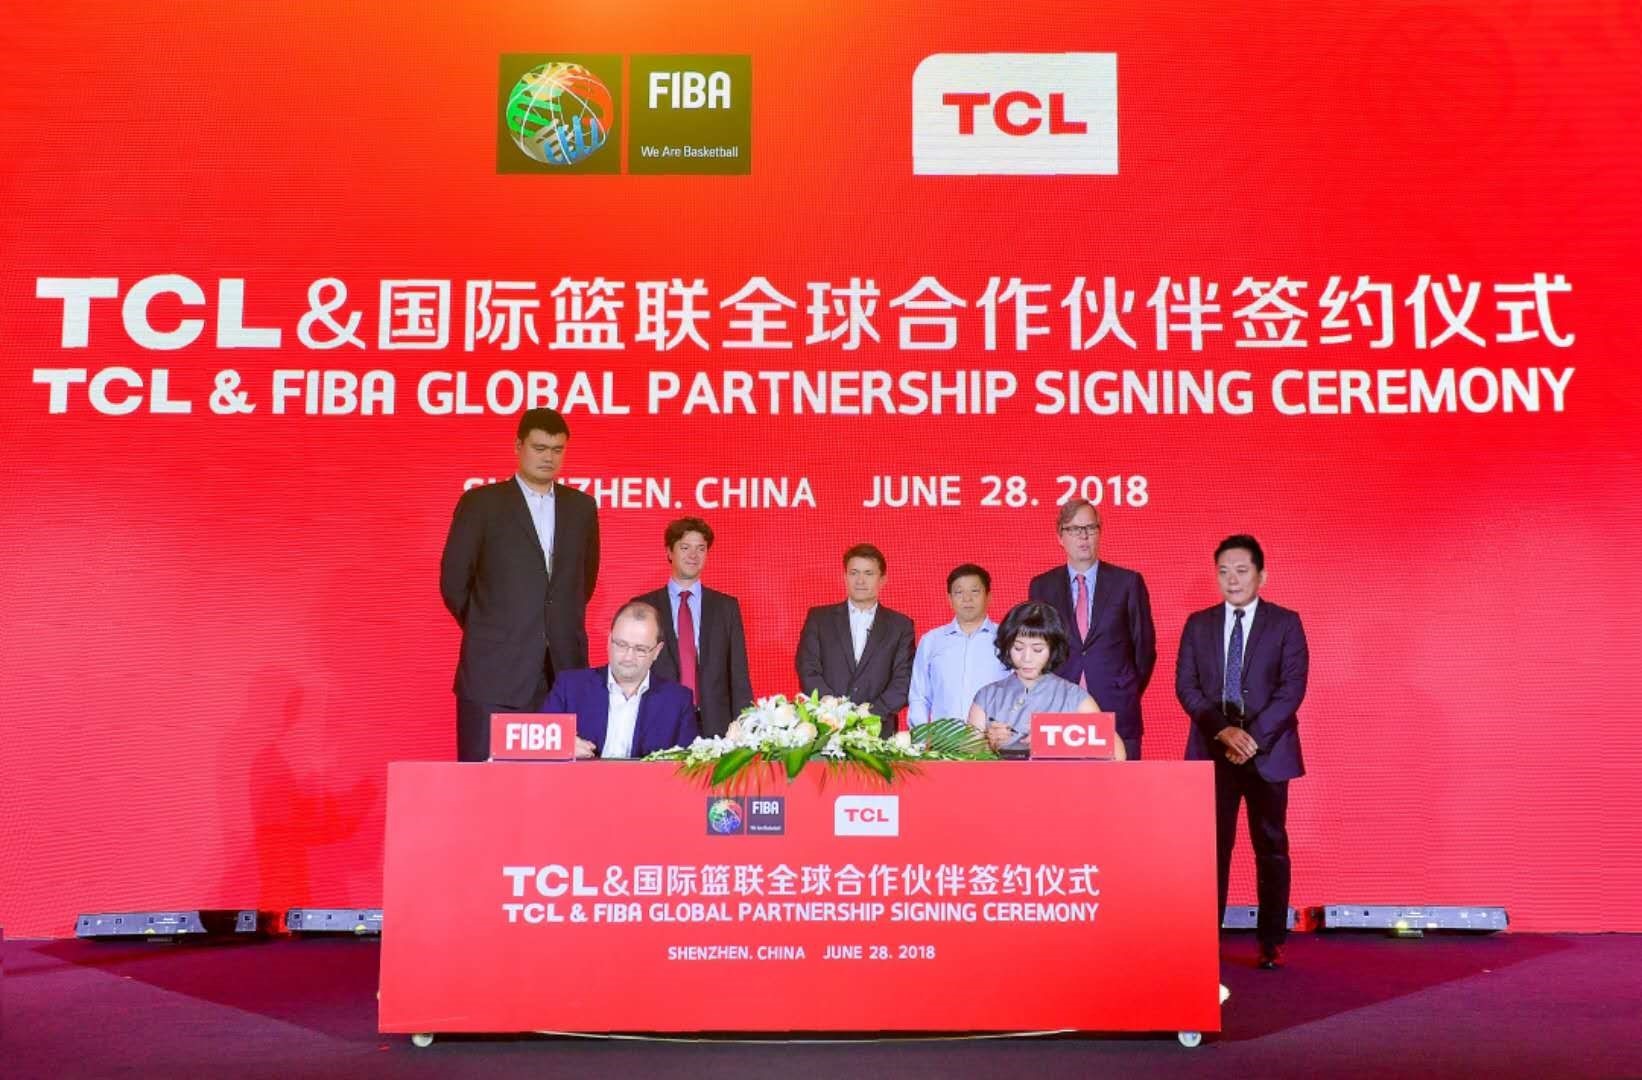 برند TCL اسپانسر فدراسیون بین المللی بسکتبال (FIBA) شد!